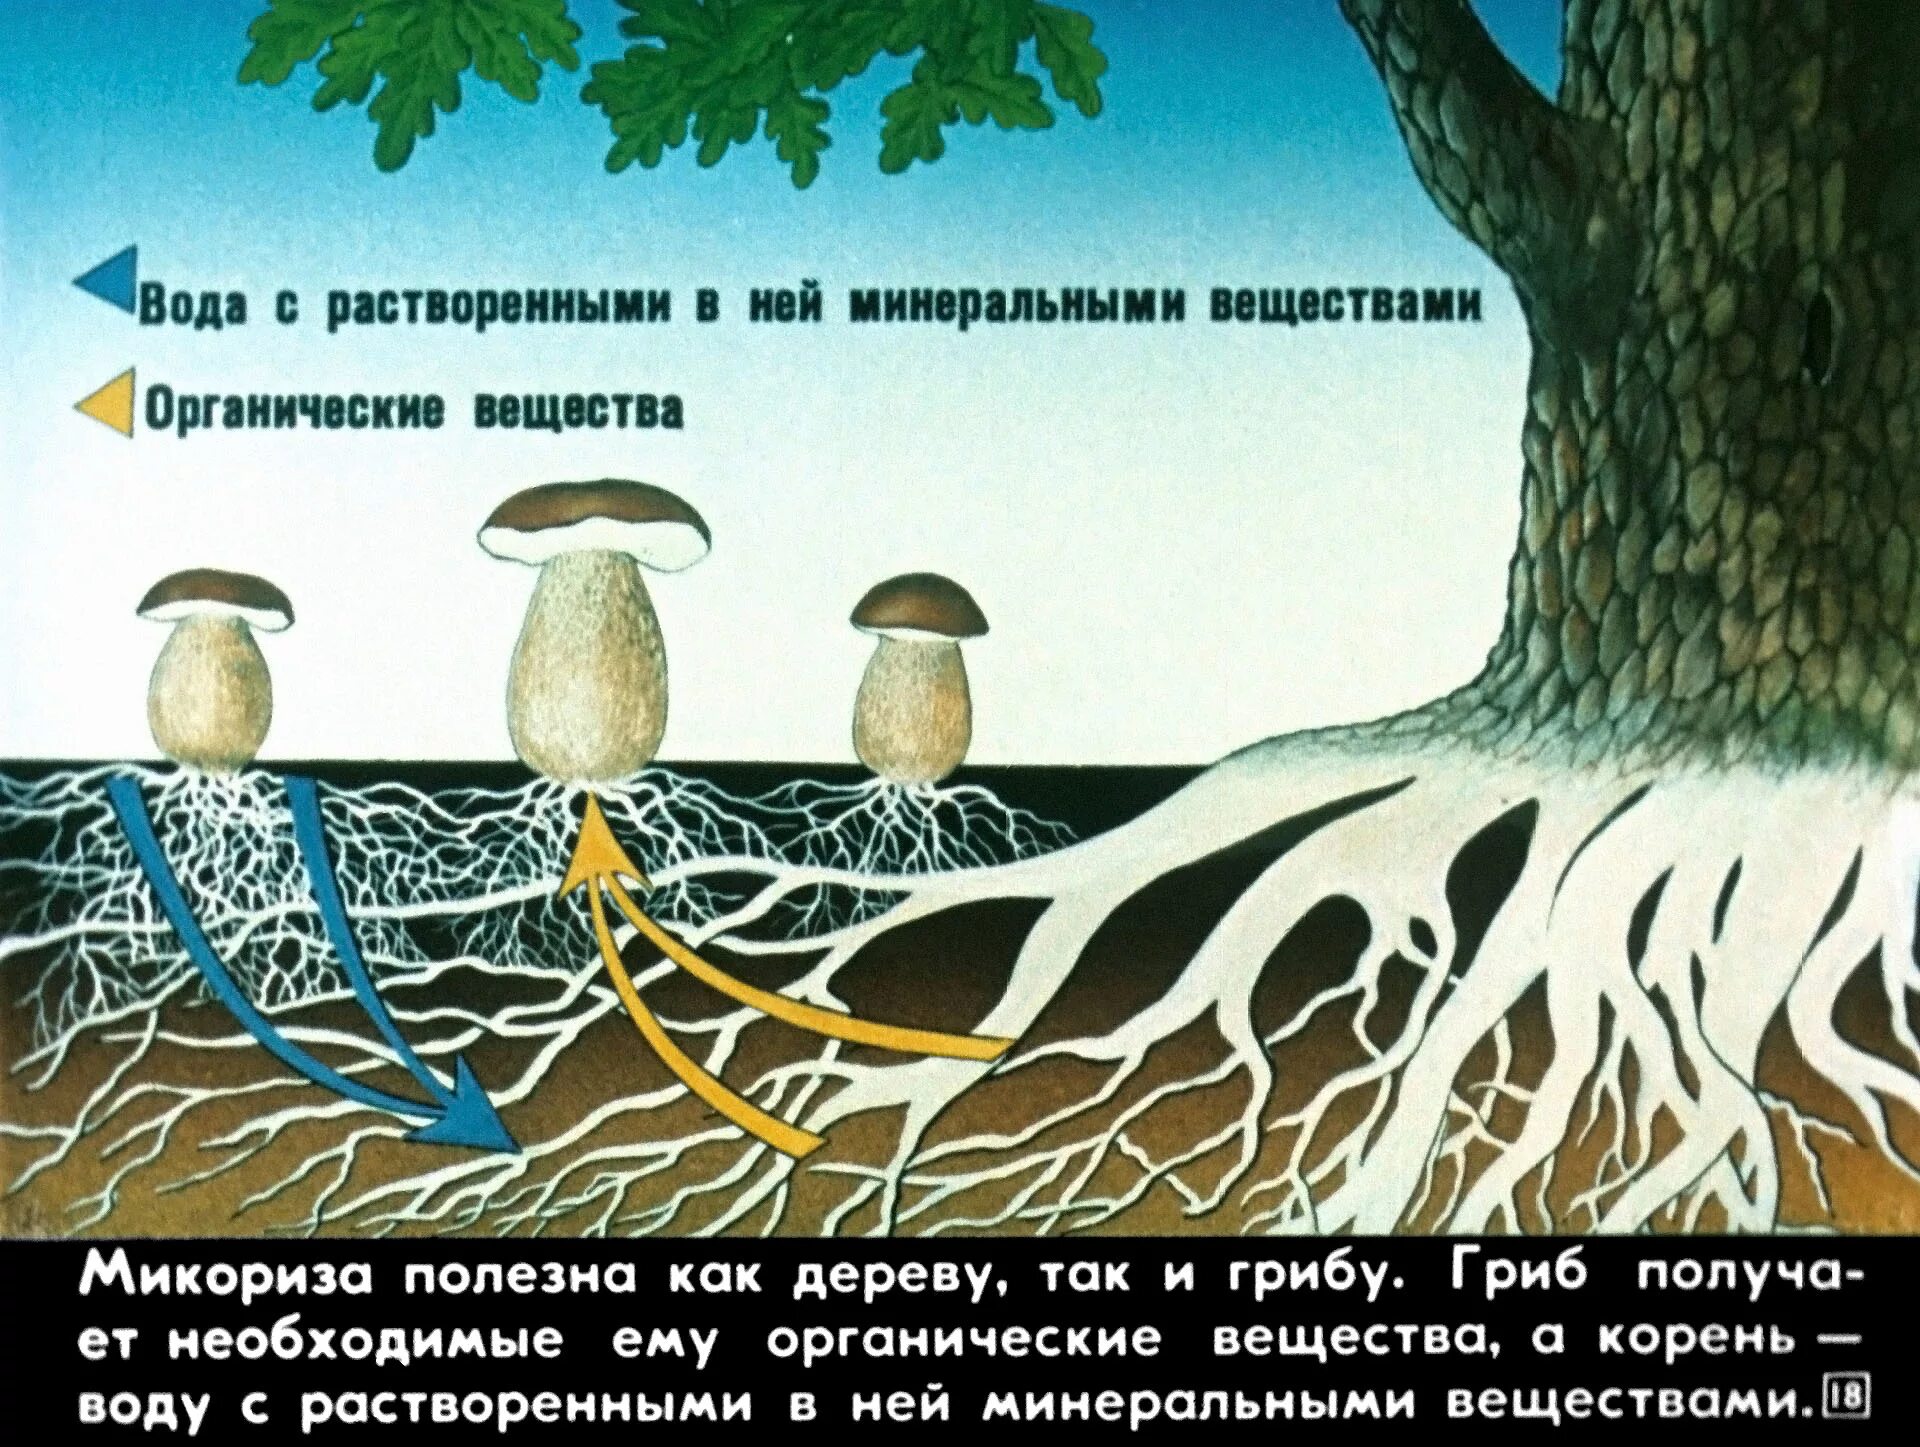 Грибы имеют корни. Схема симбиоза гриба и дерева. Микориза с грибами-симбионтами. Симбиоз гриба и дерева. Взаимосвязь грибов и деревьев.